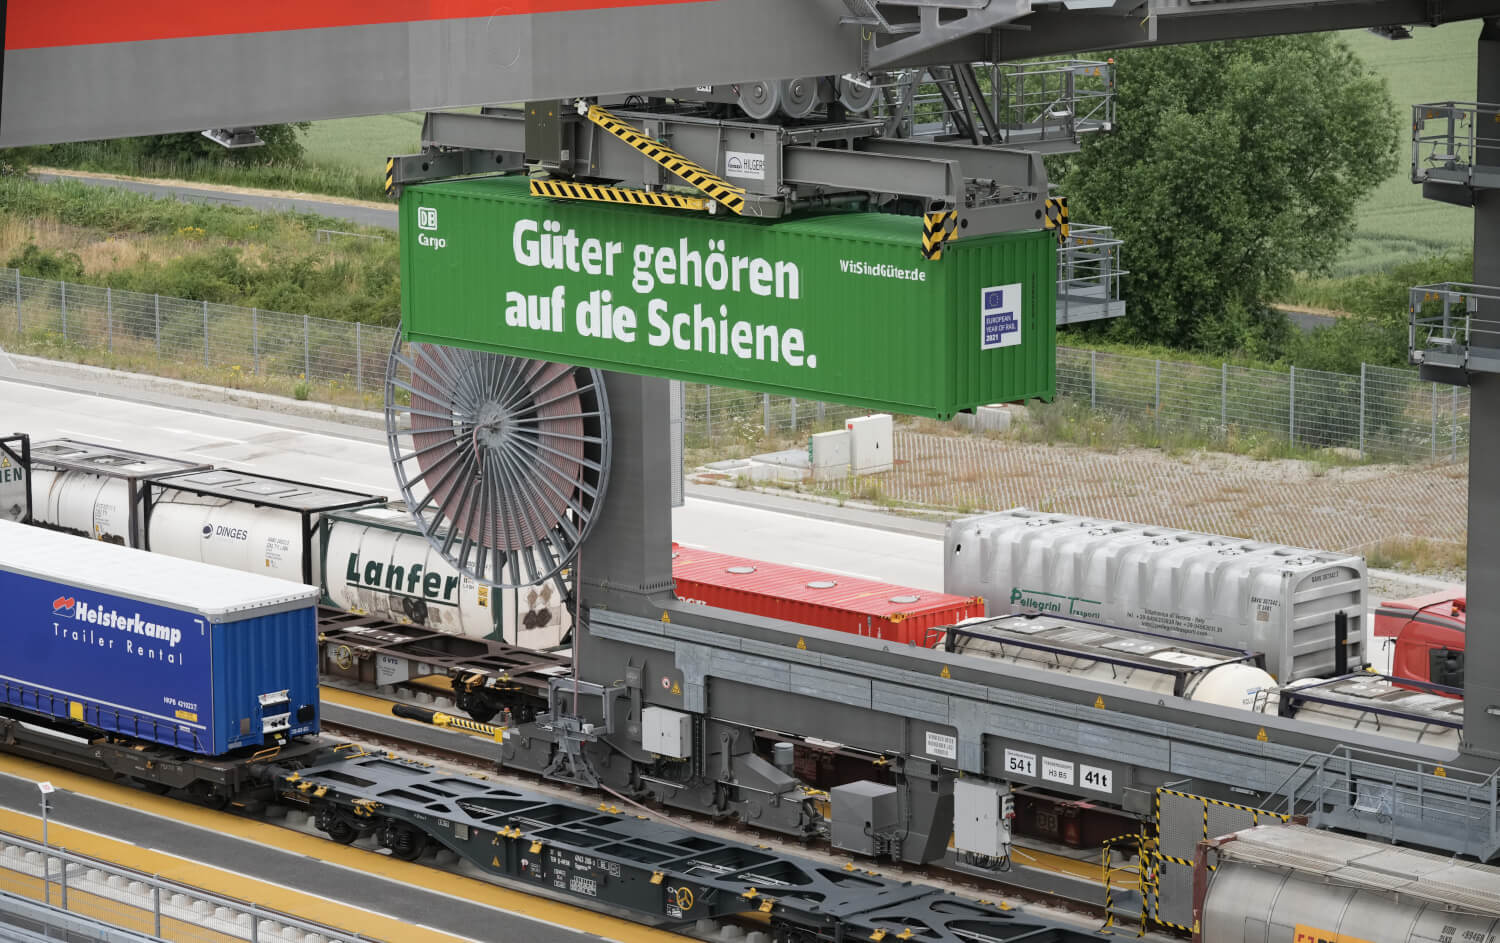 Umschlagbahnhof mit einem grünen Container. Text auf Container: Güter gehören auf die Schiene